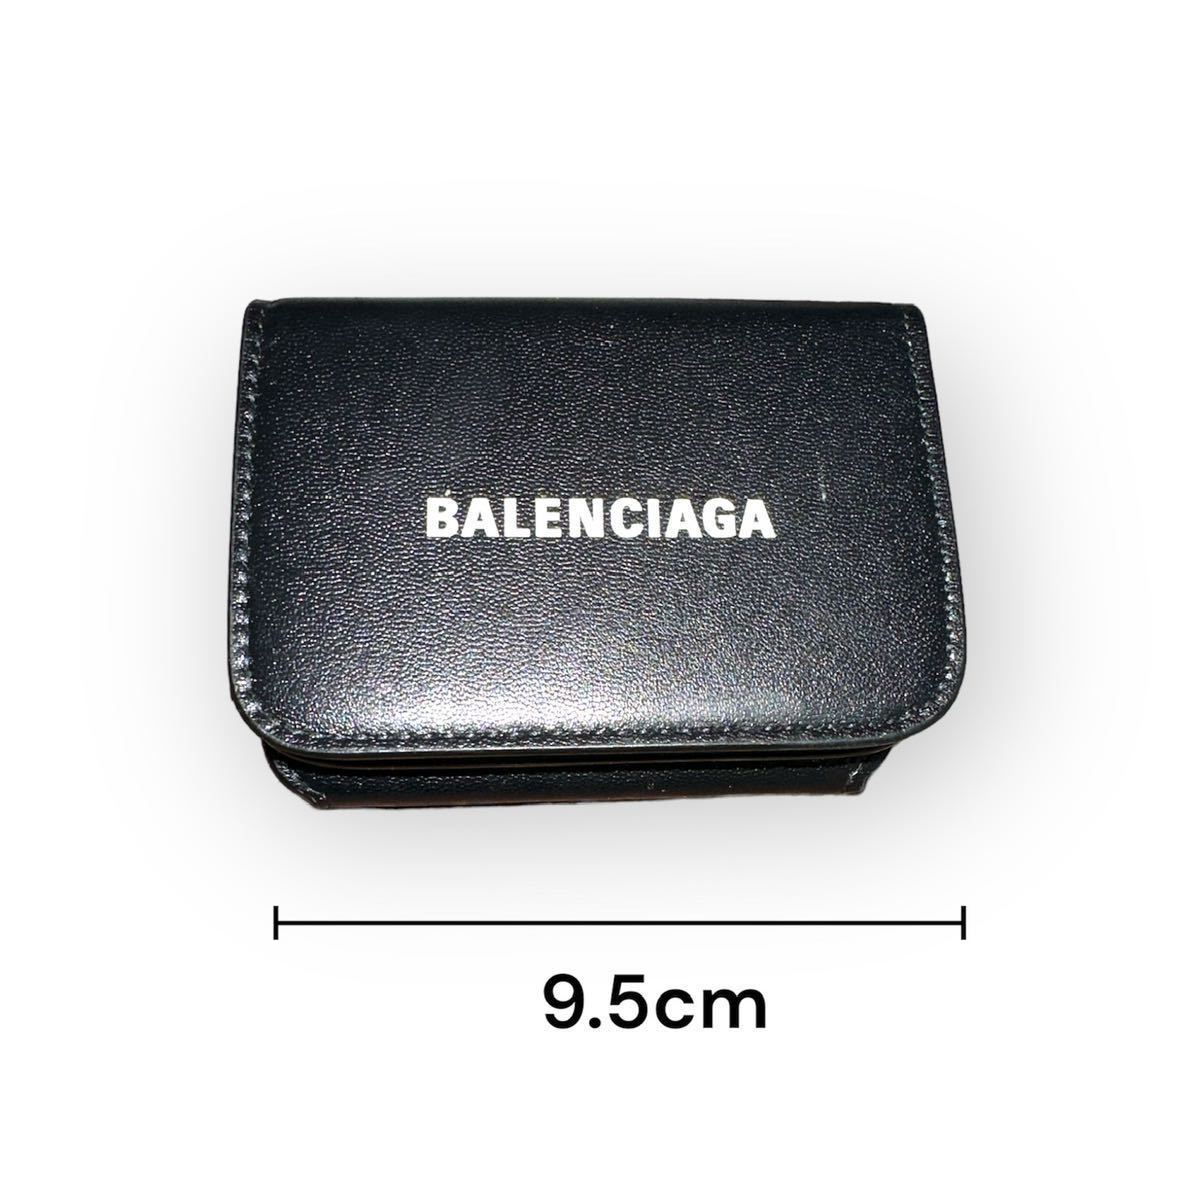 特価】 BALENCIAGA バレンシアガ 財布 3つ折り財布 ブラック ミニウォレット ユニセックス 男女兼用